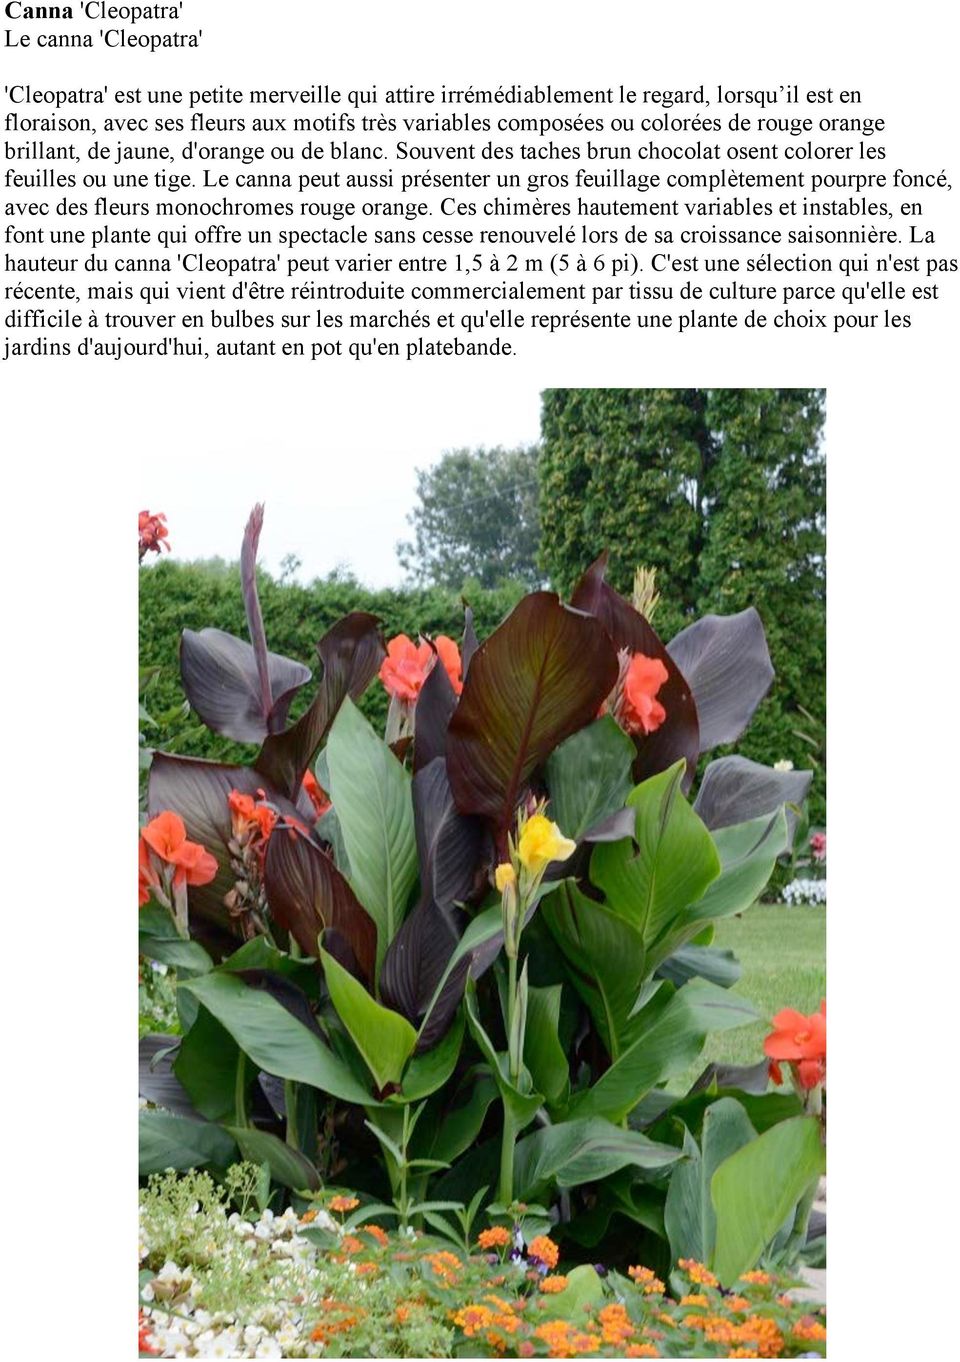 Le canna peut aussi présenter un gros feuillage complètement pourpre foncé, avec des fleurs monochromes rouge orange.